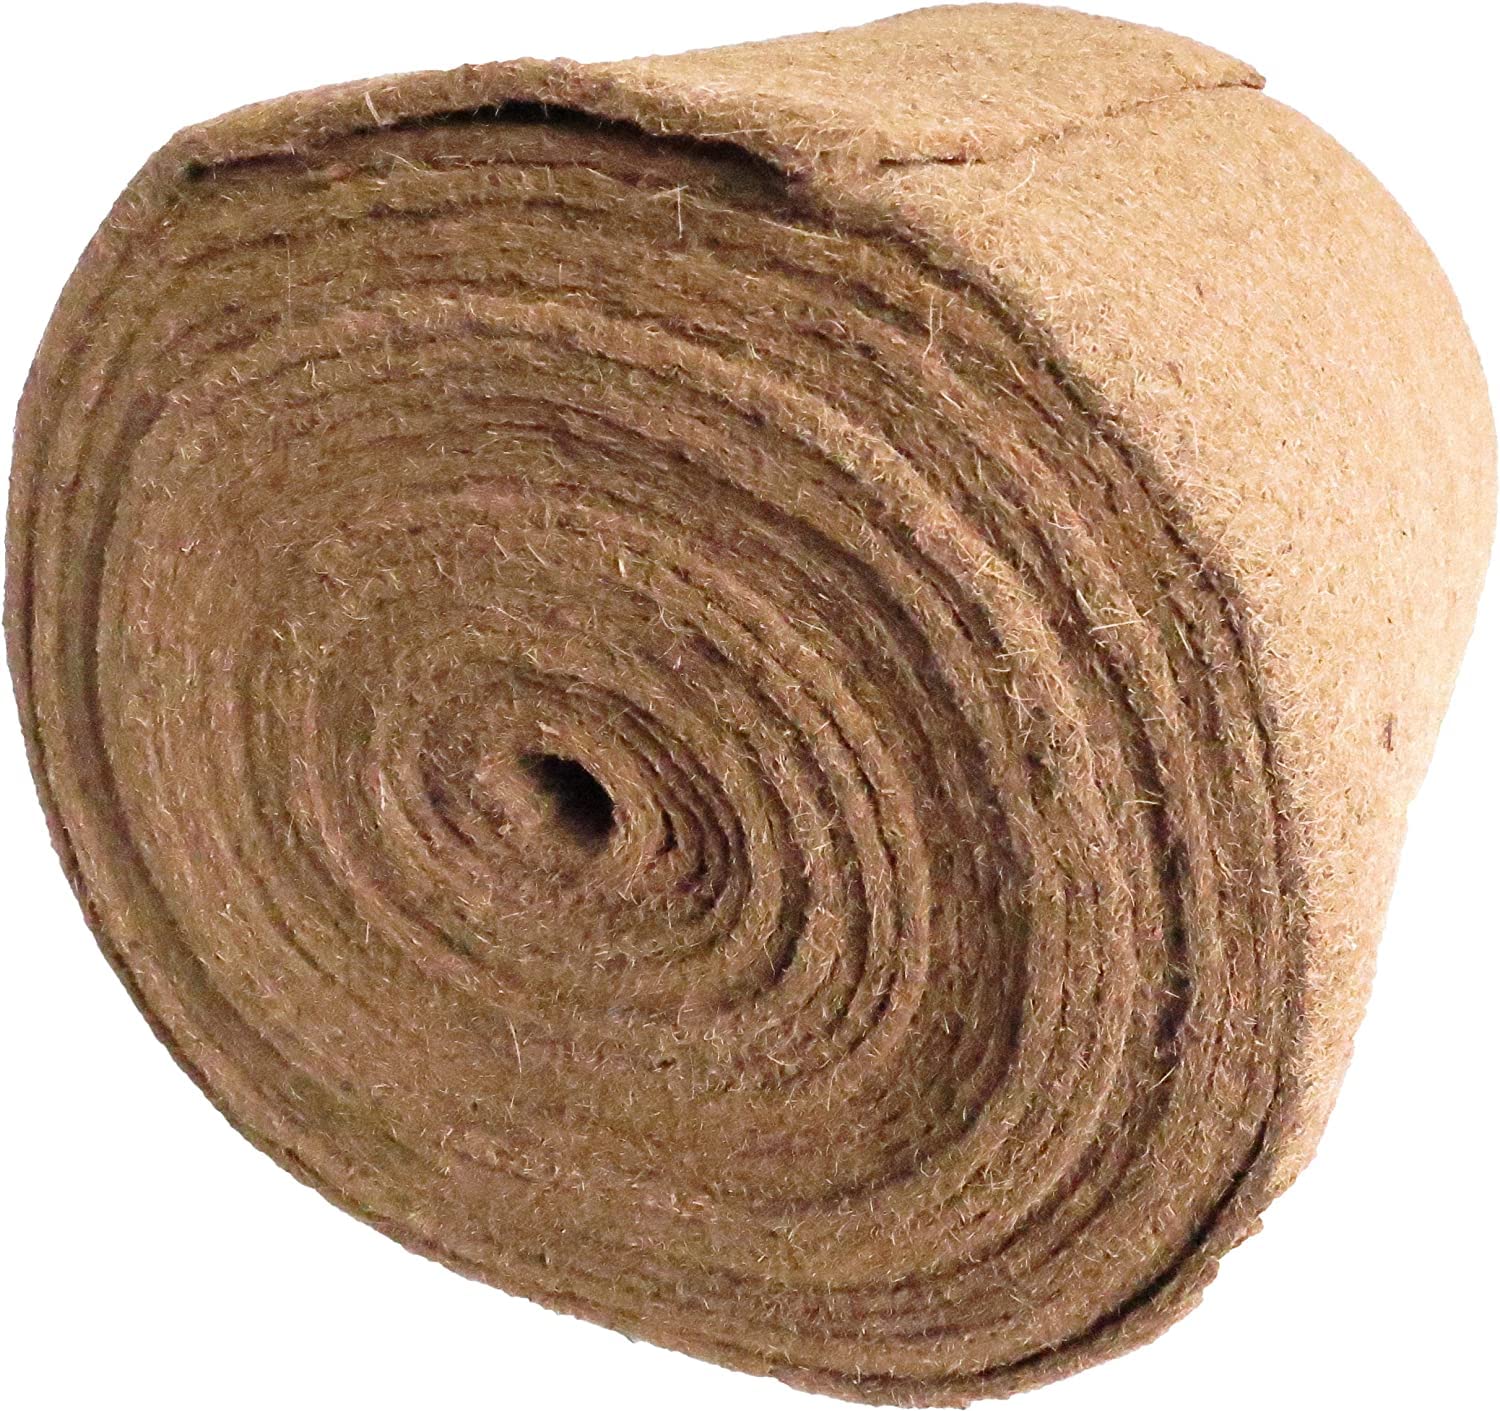 Nagerteppich aus 100% Kokosfasern ohne Latex, 1 x 5 m, ca. 10mm dick , insg. 5m² (EUR 6,38 /m²),geeignet als Bodenabdeckung im Käfig für Kaninchen, Hamster und andere Nager, Nager-Teppich